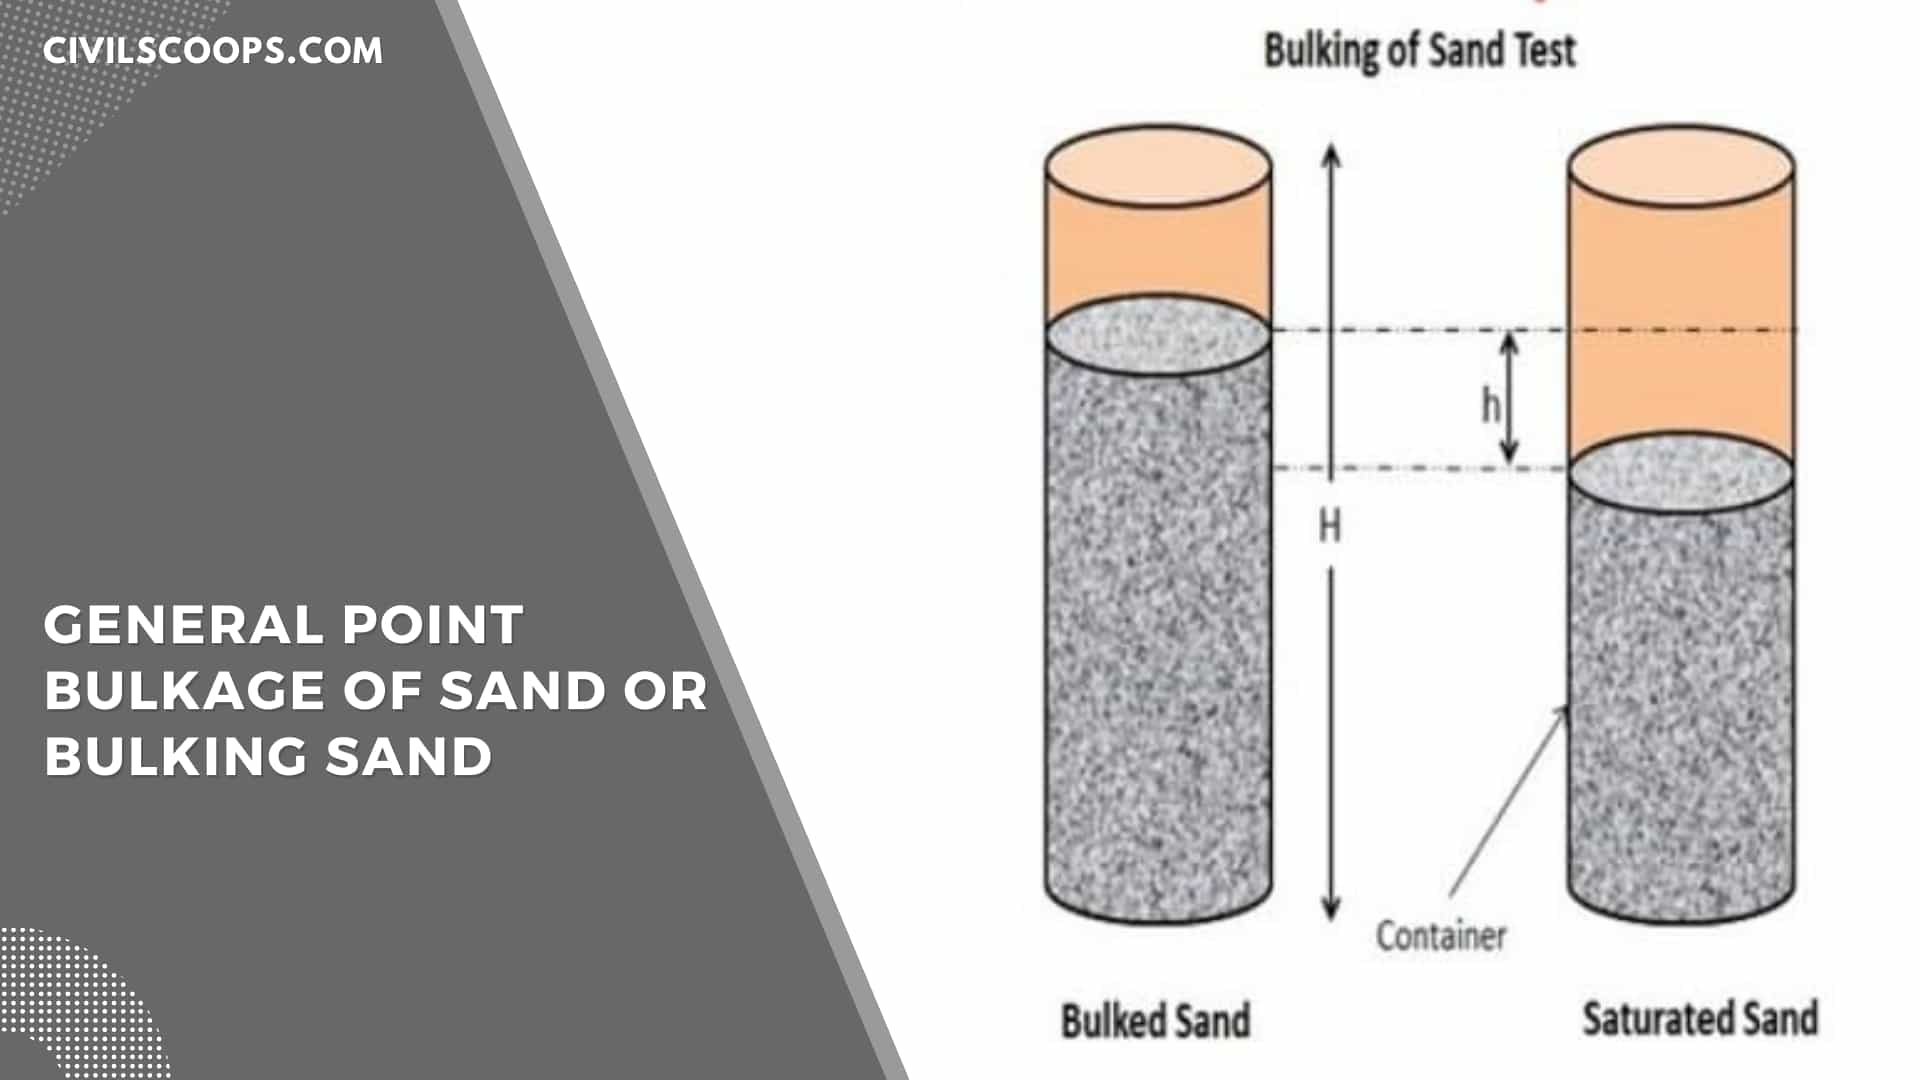 General Point Bulkage of Sand or bulking sand